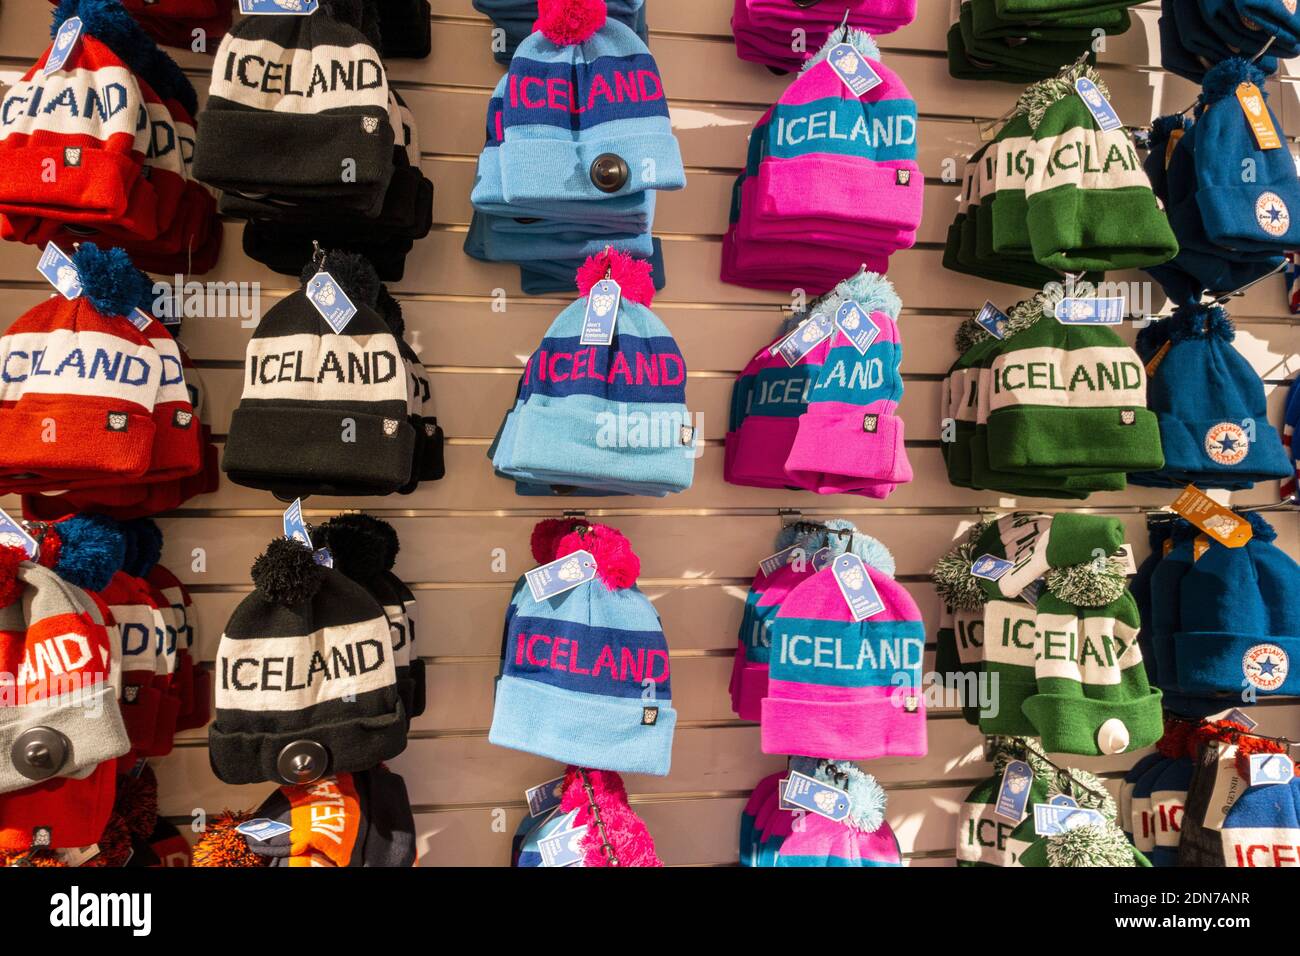 Island Wool Bobble Hüte Toques Beanies Zum Verkauf In Einem Isländischer Tourist Souvenir Store Winter Strickwollehatten Shop Display Stockfoto